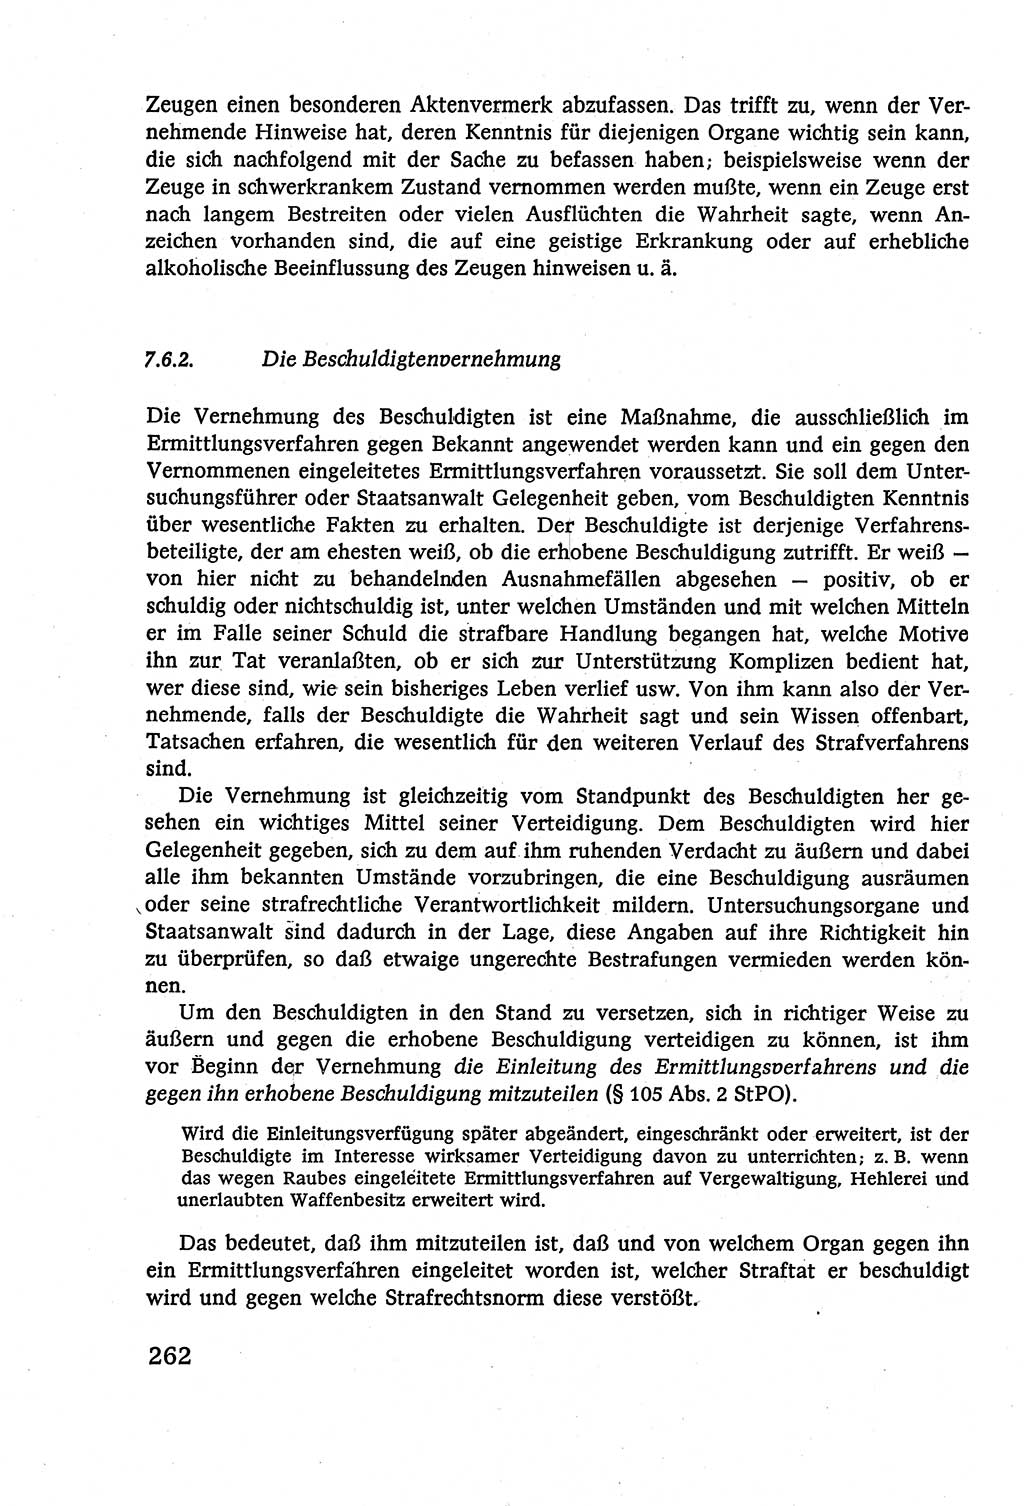 Strafverfahrensrecht [Deutsche Demokratische Republik (DDR)], Lehrbuch 1977, Seite 262 (Strafverf.-R. DDR Lb. 1977, S. 262)